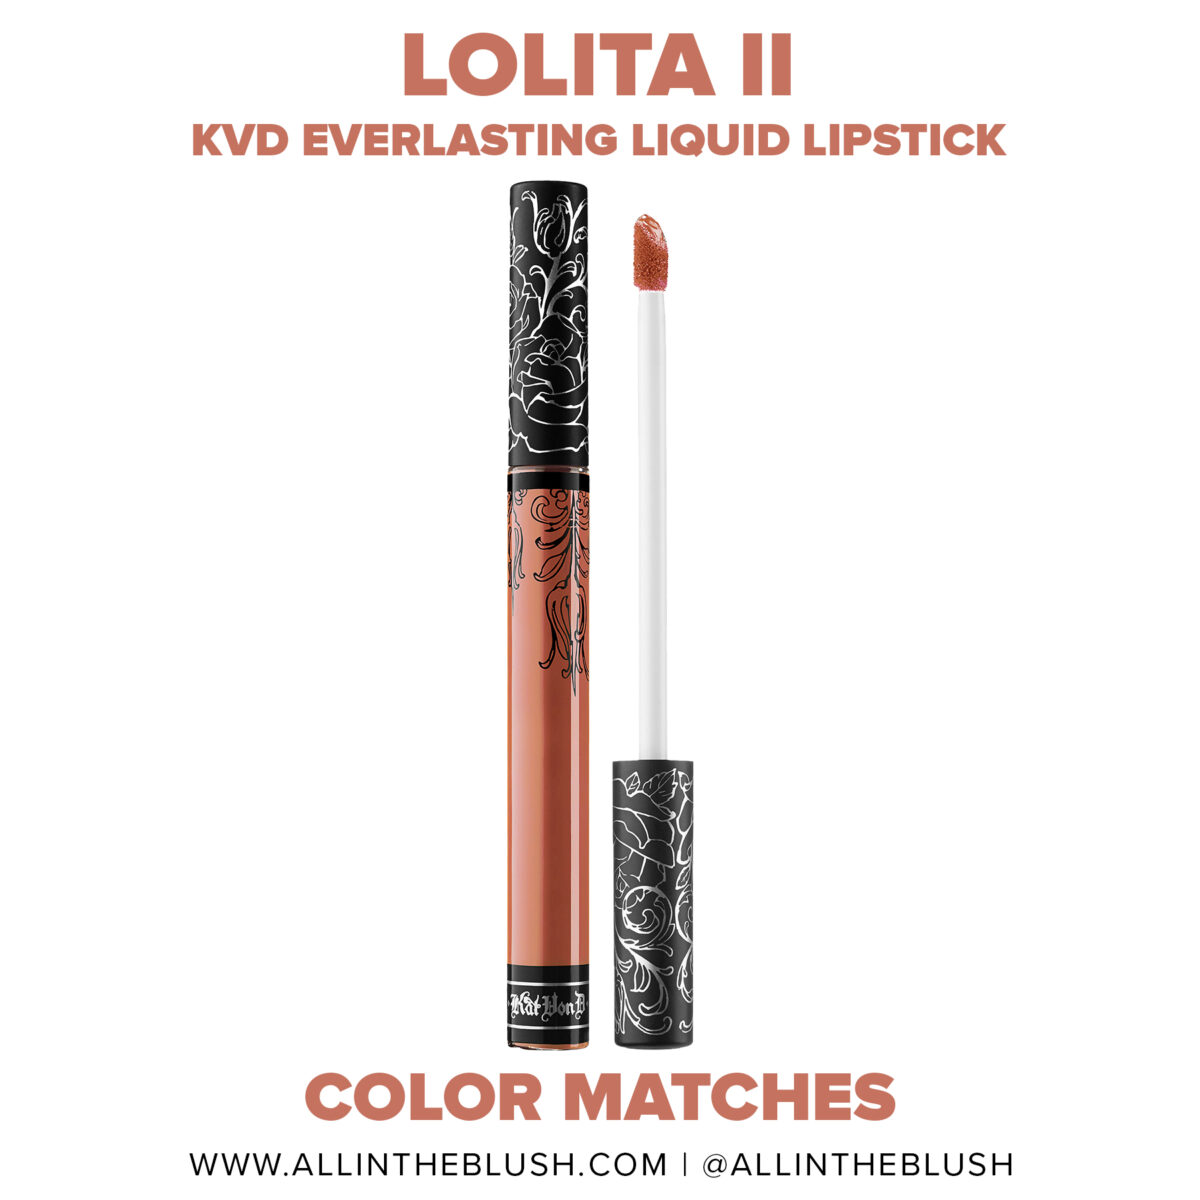 Kat Von D Lolita II Everlasting Liquid Lipstick Dupes